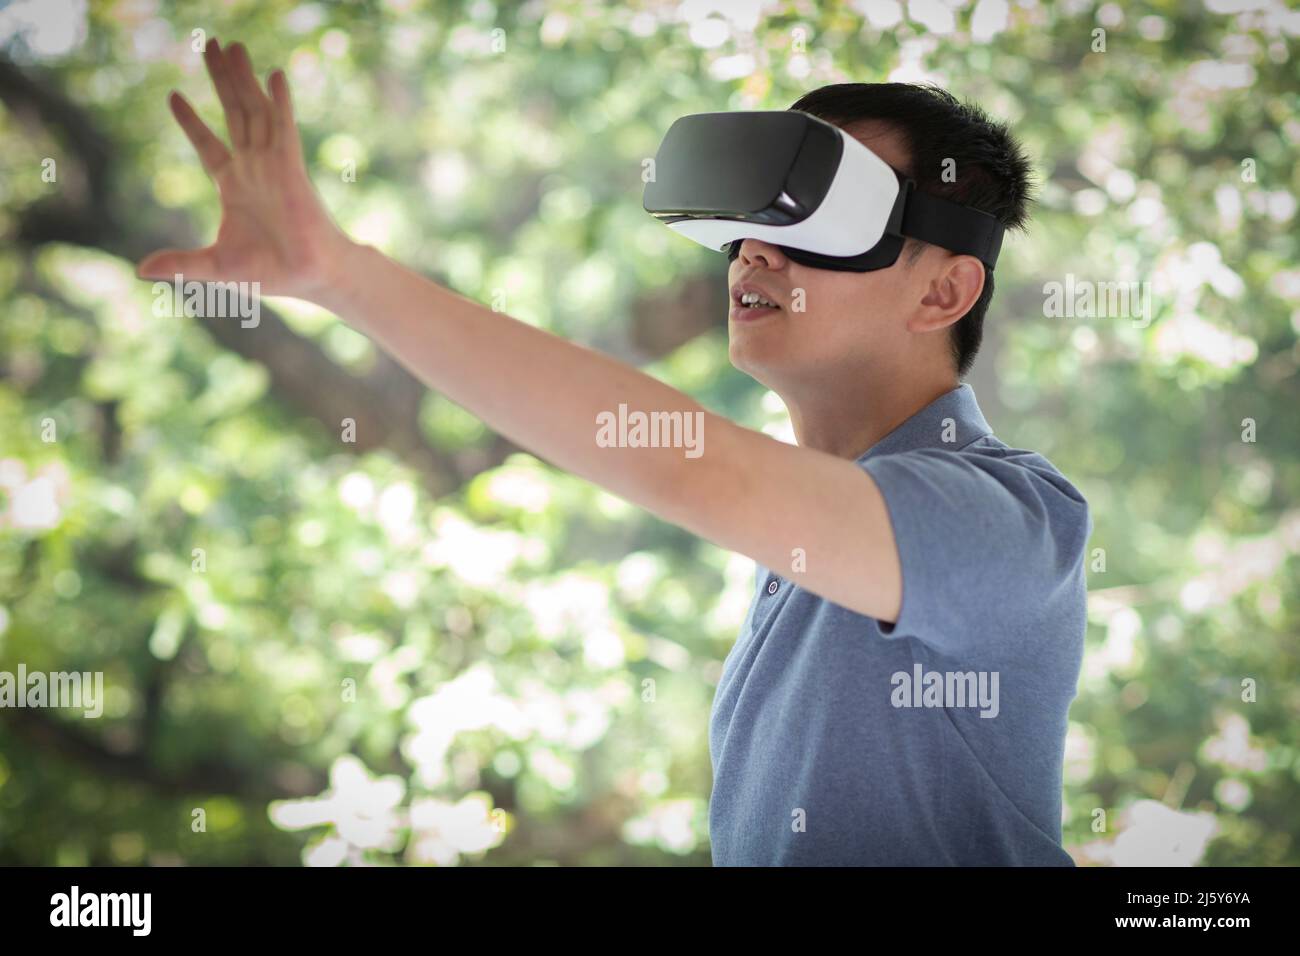 Hombre gestando, utilizando auriculares VR Foto de stock